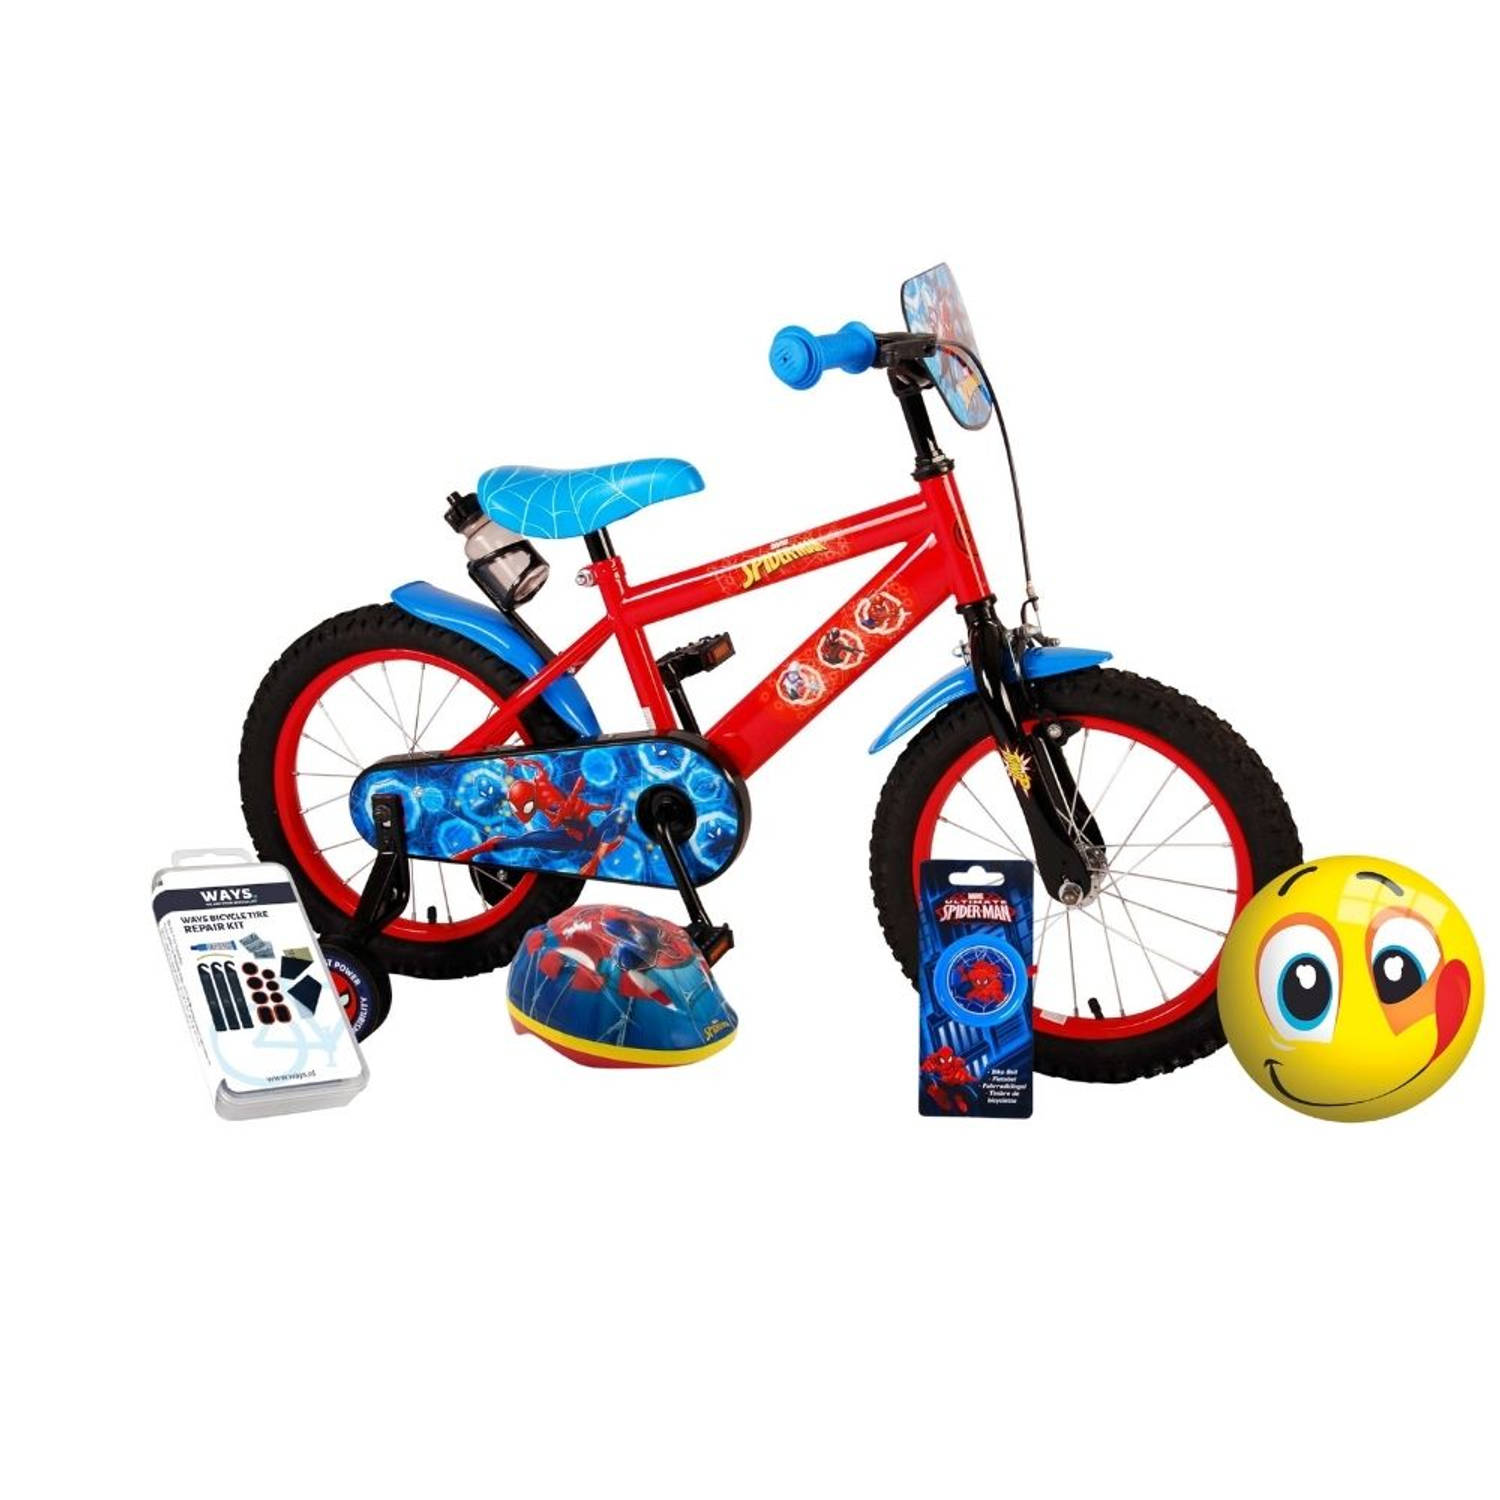 Voorafgaan geloof vijver Volare Kinderfiets Spider-Man - 16 inch - Blauw/Rood - Inclusief fietshelm  en accessoires | Blokker